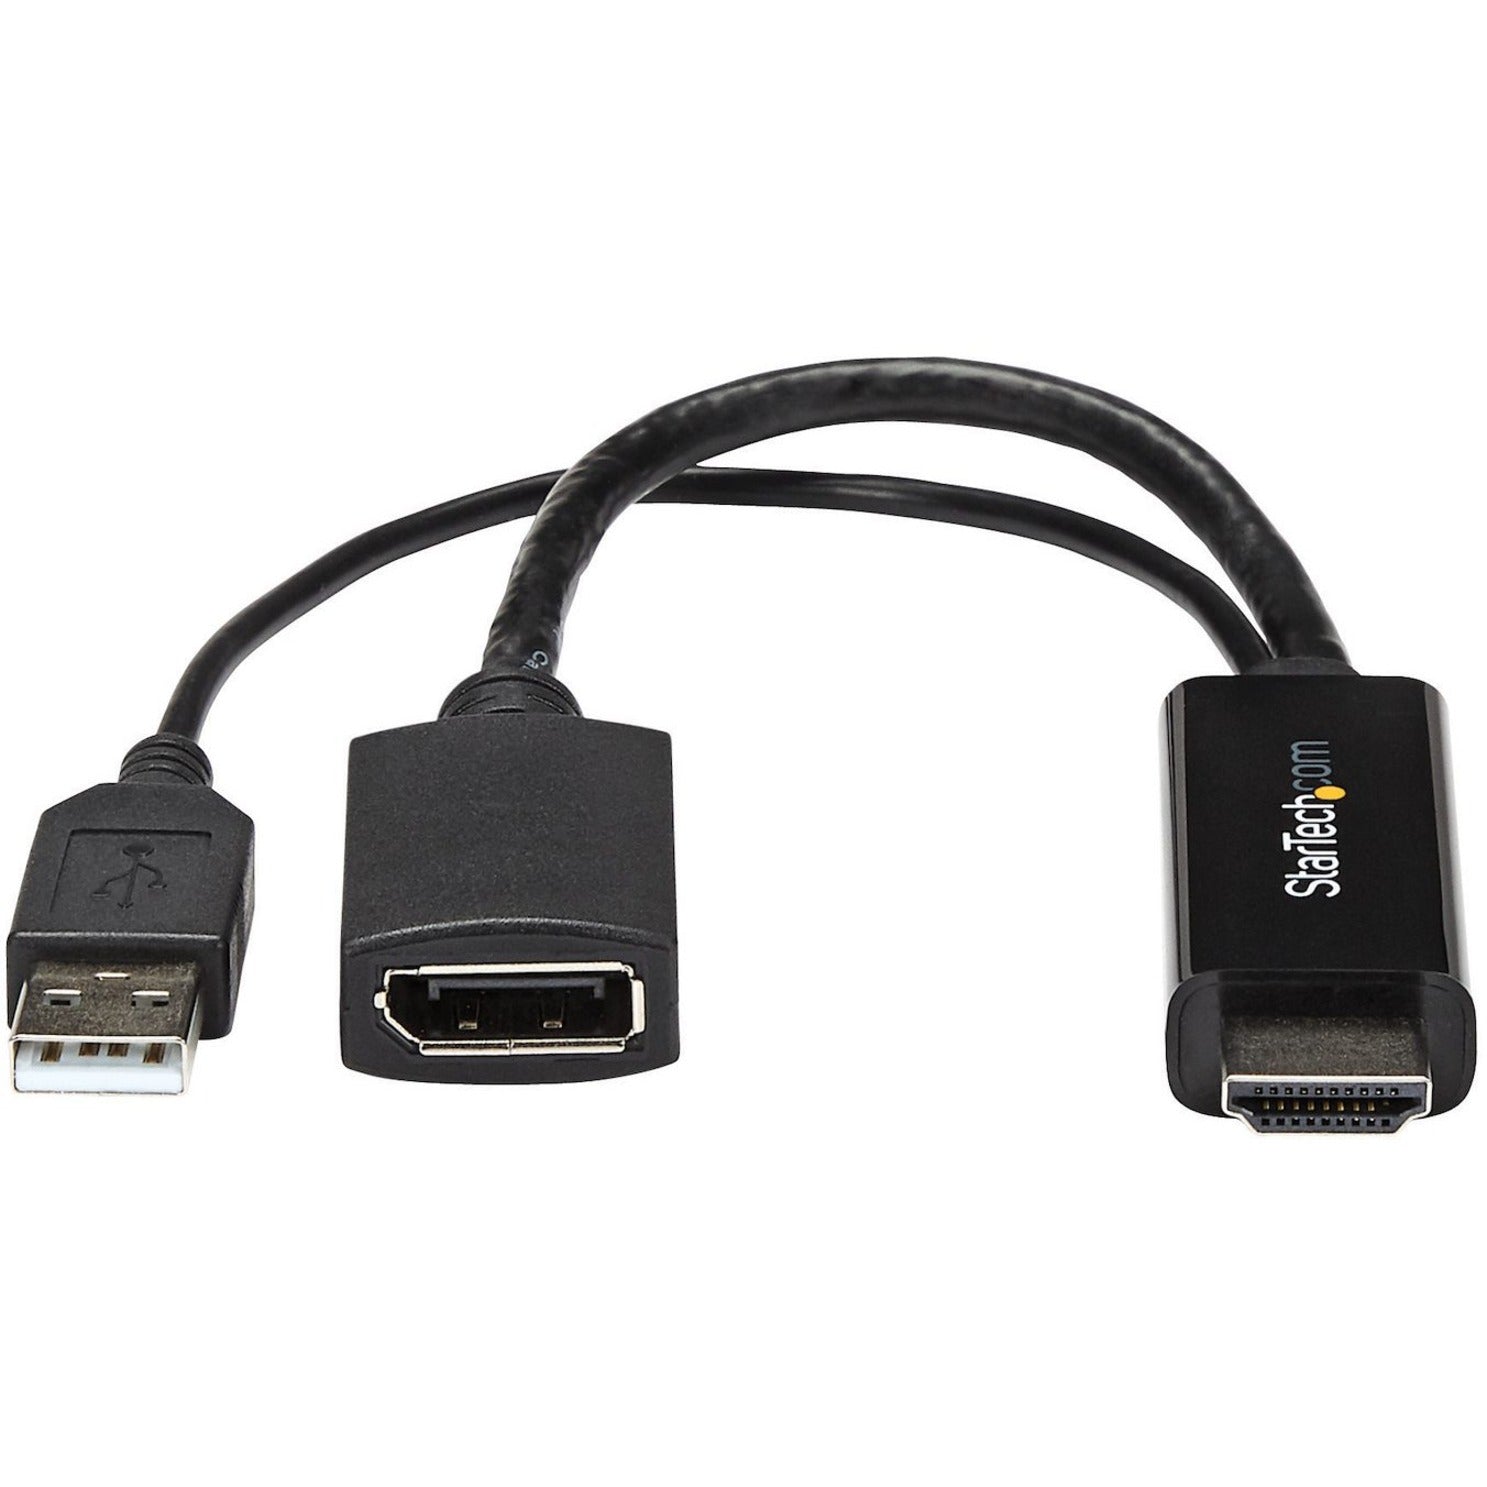 星磁科技 HD2DP HDMI 到 DisplayPort 转换器- HDMI 到 DP 适配器与 USB 电源 - 4K，易插即用视频适配器 星磁科技 星磁